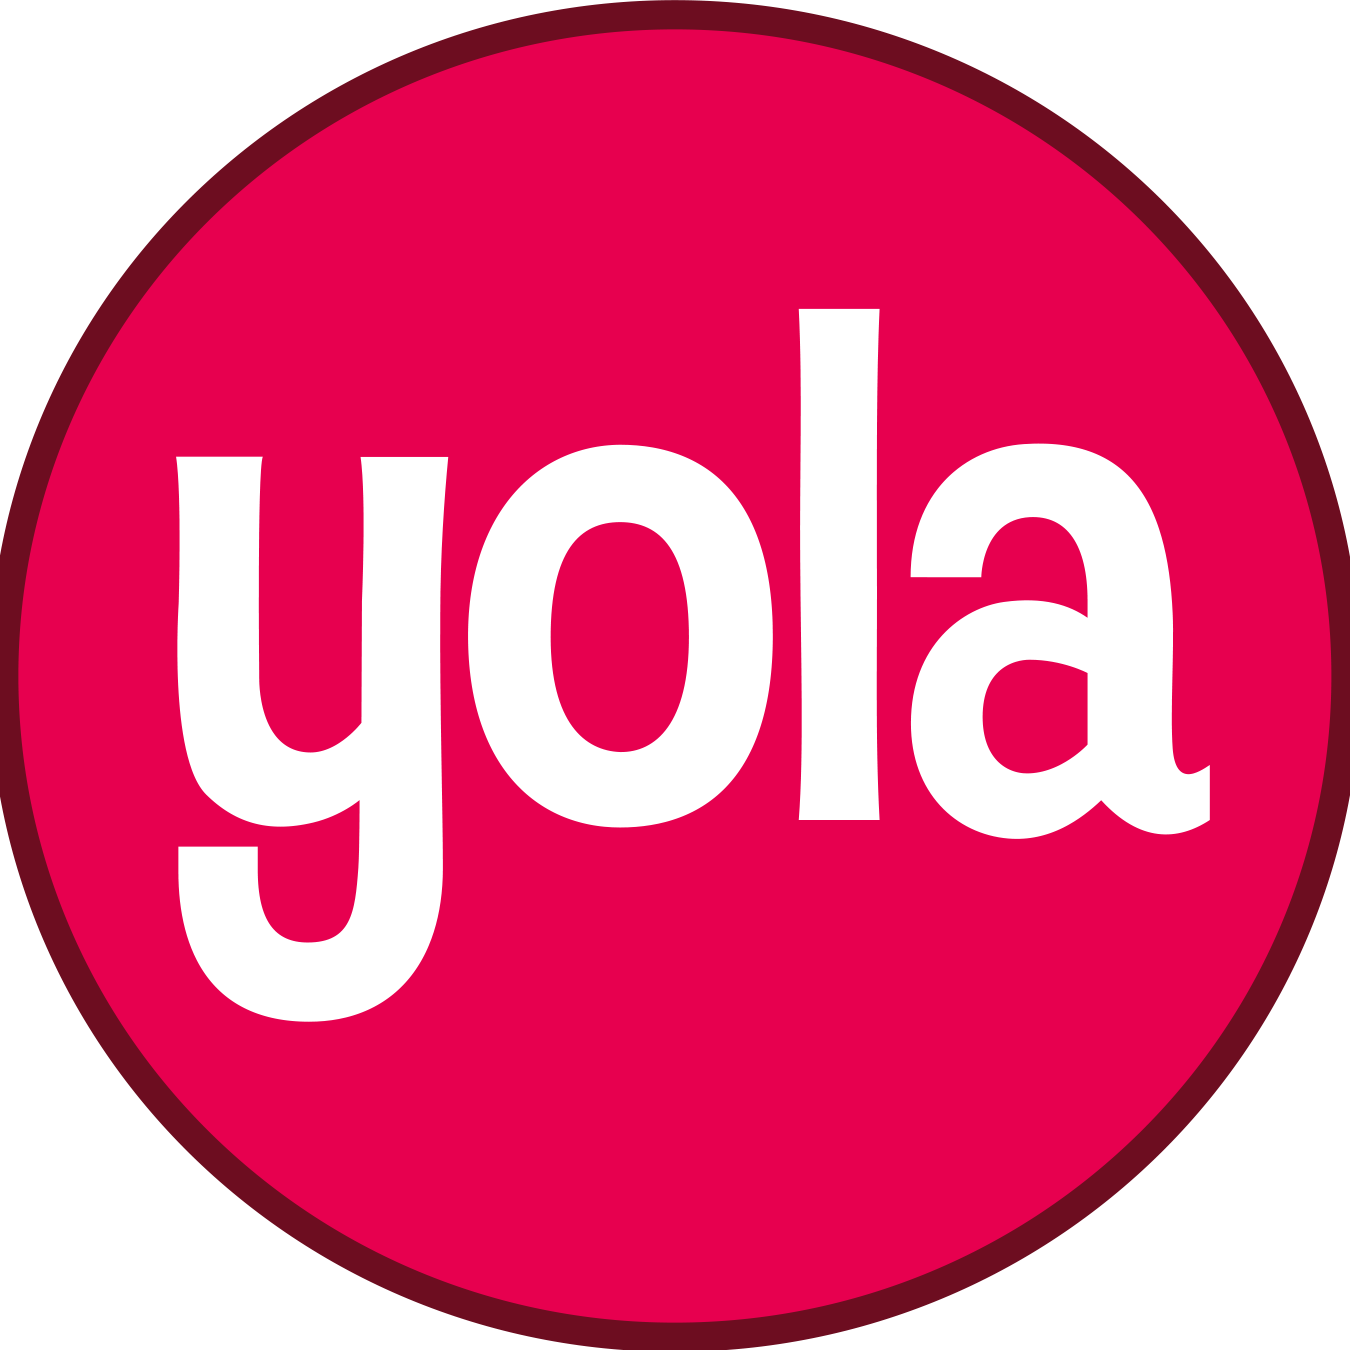 Yola є одним з небагатьох провайдерів CMS, що пропонує телефонну лінію підтримки